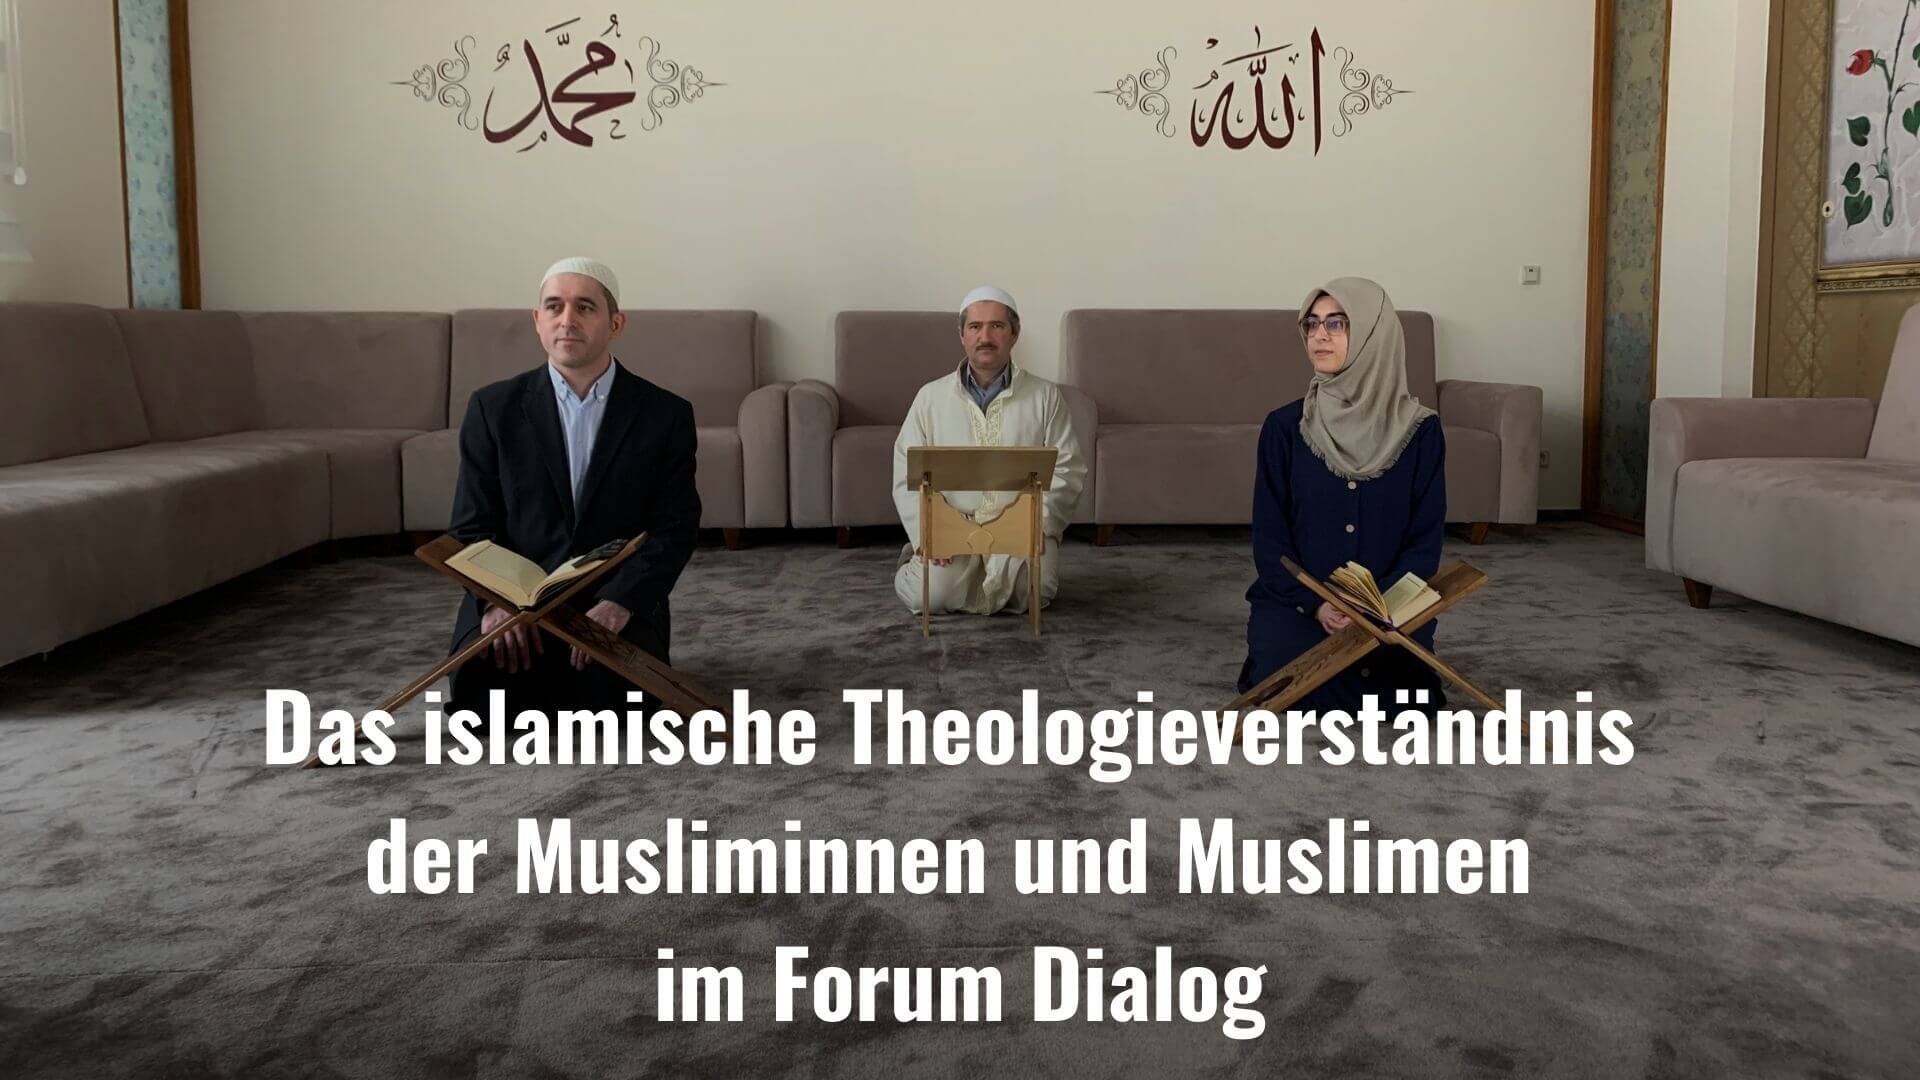 Das islamische Theologieverständnis der Musliminnen und Muslimen im Forum Dialog